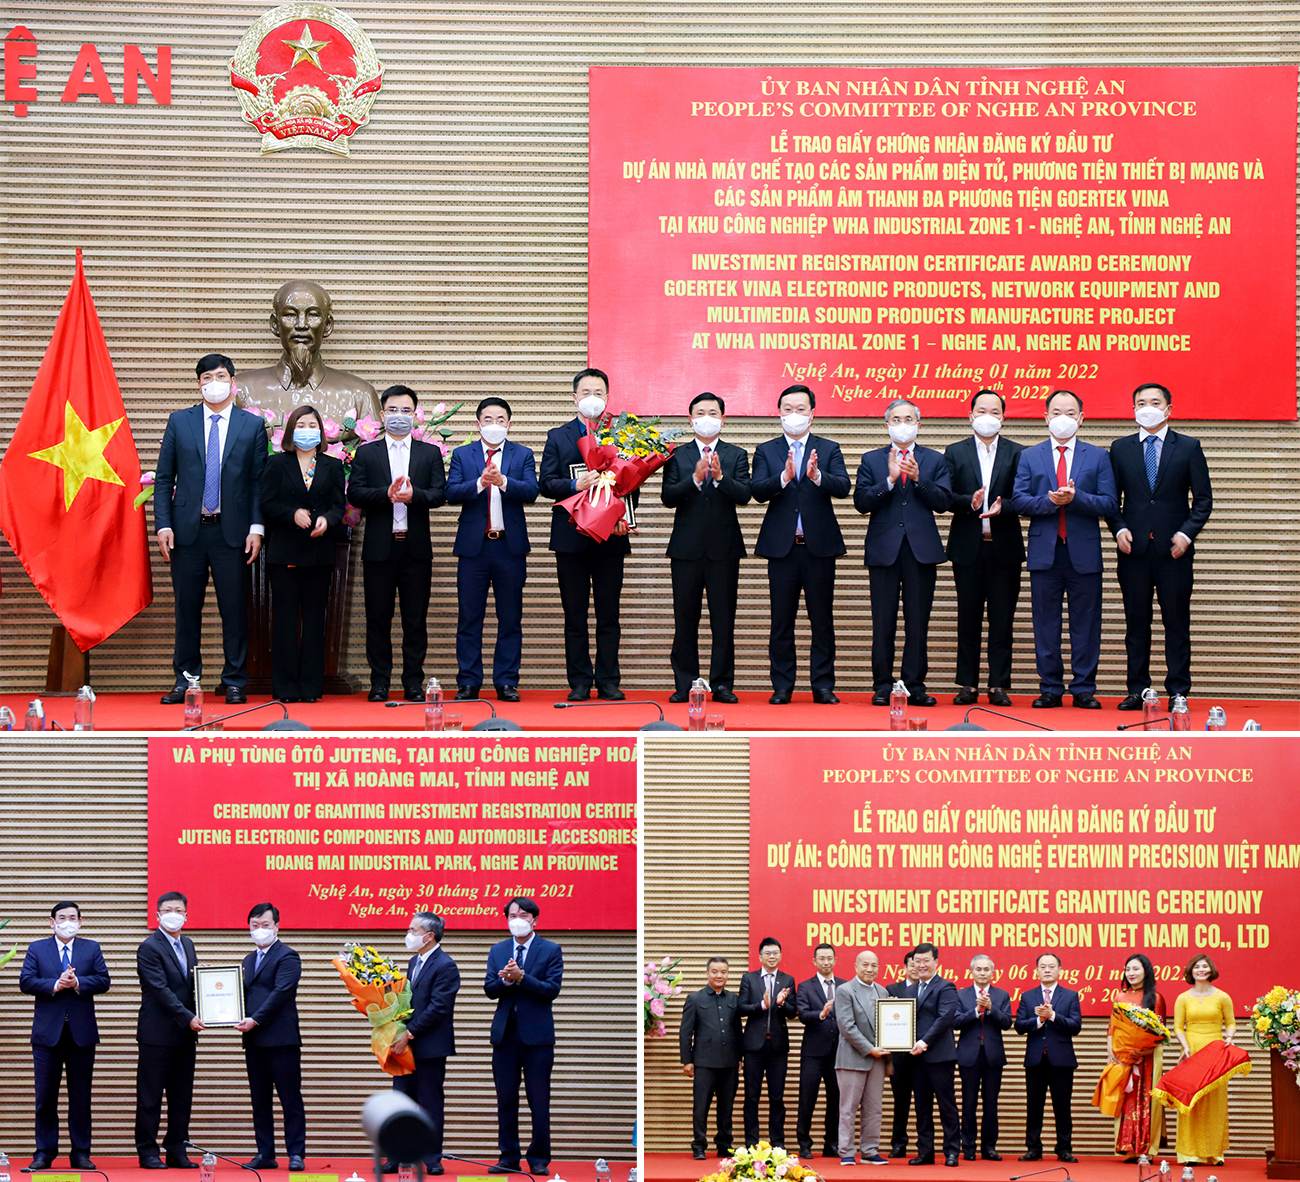 Các đồng chí lãnh đạo tỉnh Nghệ An trao giấy chứng nhận đầu tư cho đại diện Tập đoàn Goertek, Tập đoàn Ju Teng và Công ty TNHH Công nghệ Everwin Precision Việt Nam.